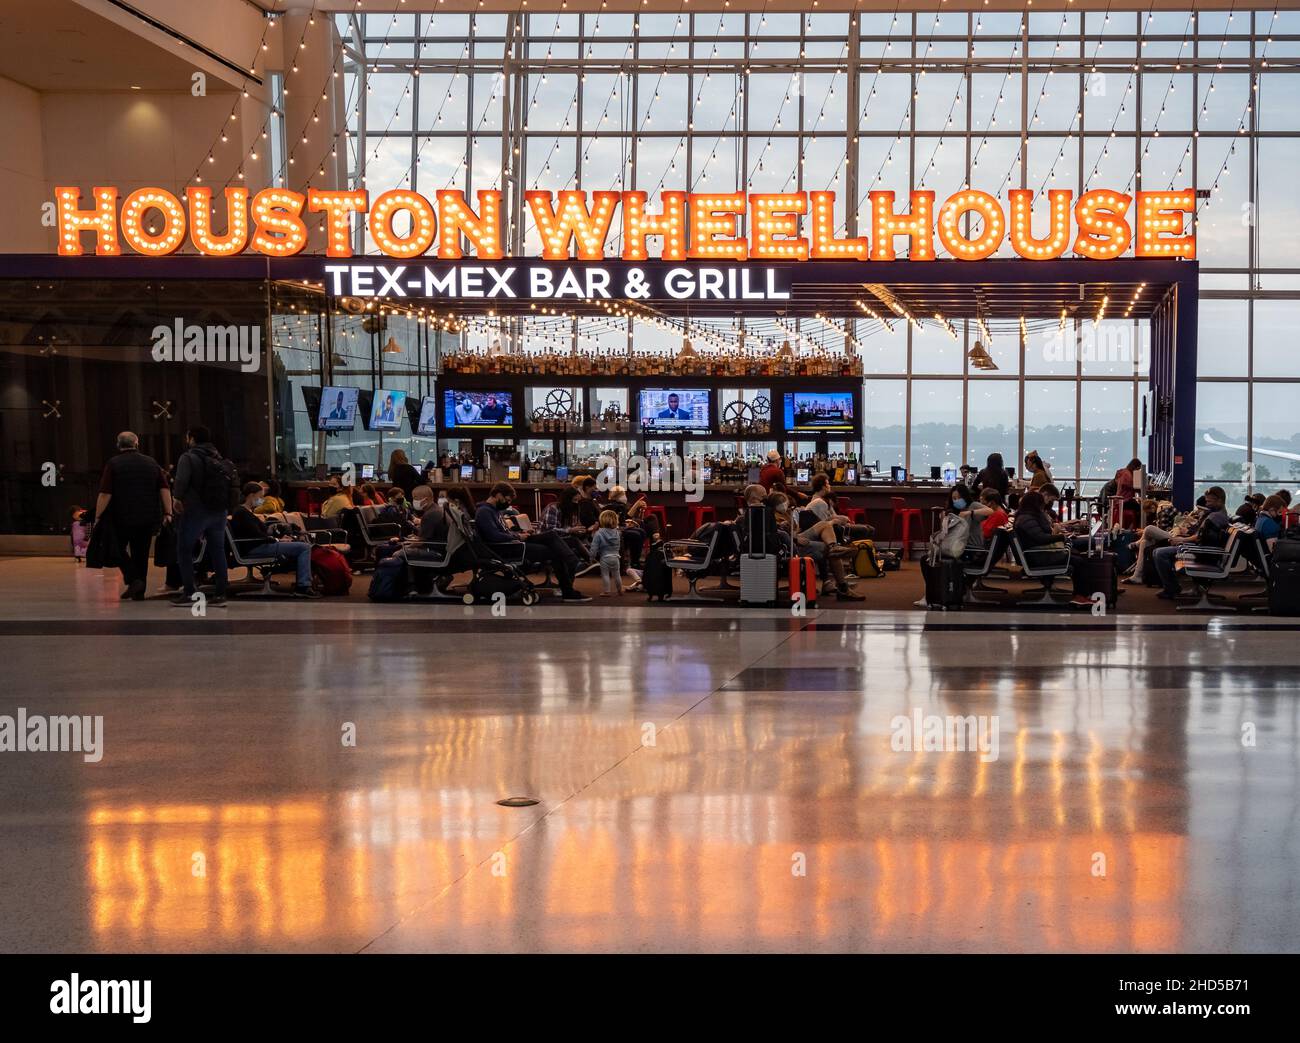 Houston Wheelhouse, un restaurant Tex-Mex dans le terminal de l'aéroport.Aéroport international George Bush.Houston, Texas, États-Unis. Banque D'Images